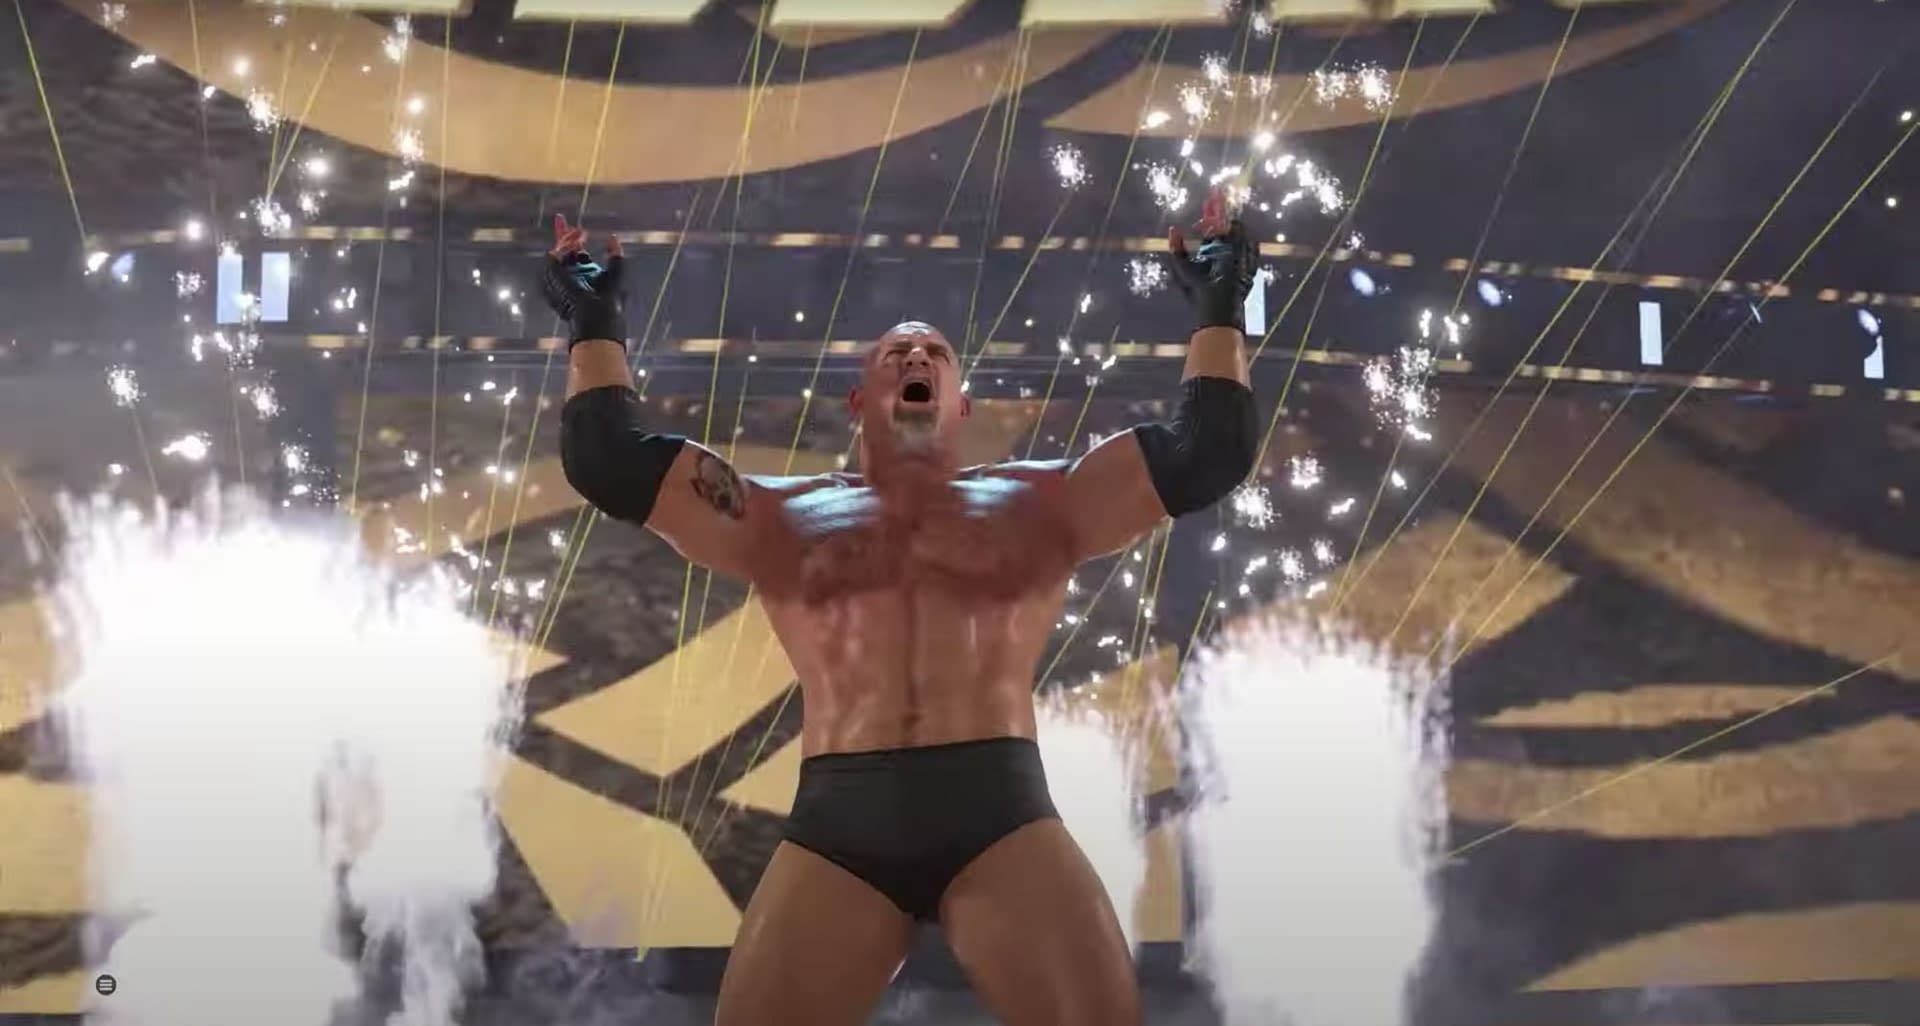 WWE 2K22 - Xbox One, Physical 